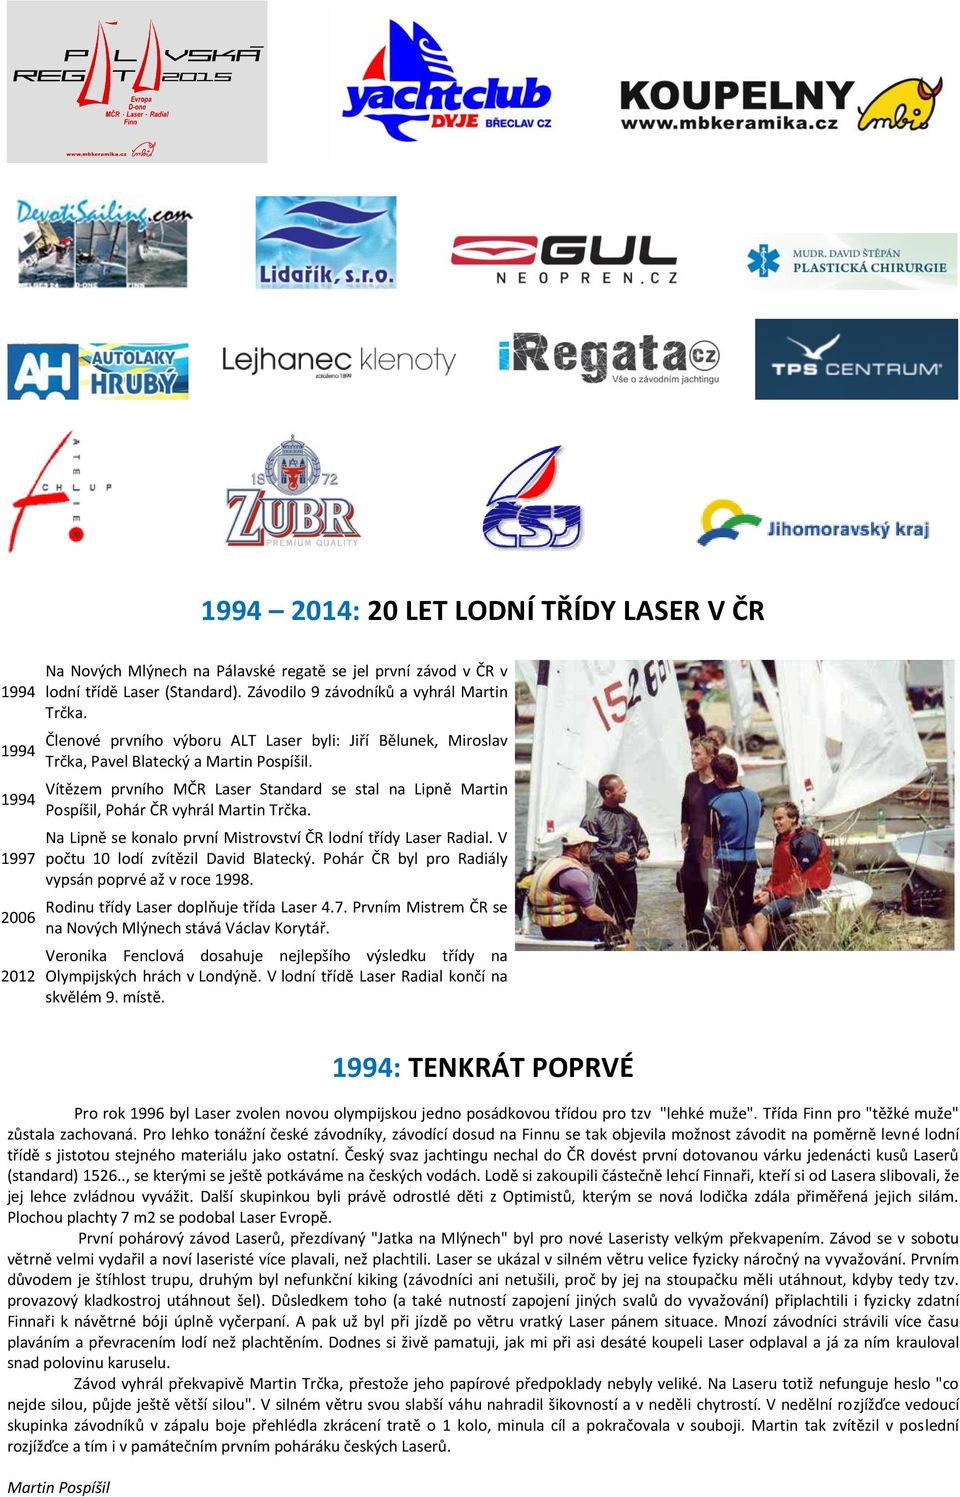 Vítězem prvního MČR Laser Standard se stal na Lipně Martin Pospíšil, Pohár ČR vyhrál Martin Trčka. Na Lipně se konalo první Mistrovství ČR lodní třídy Laser Radial.